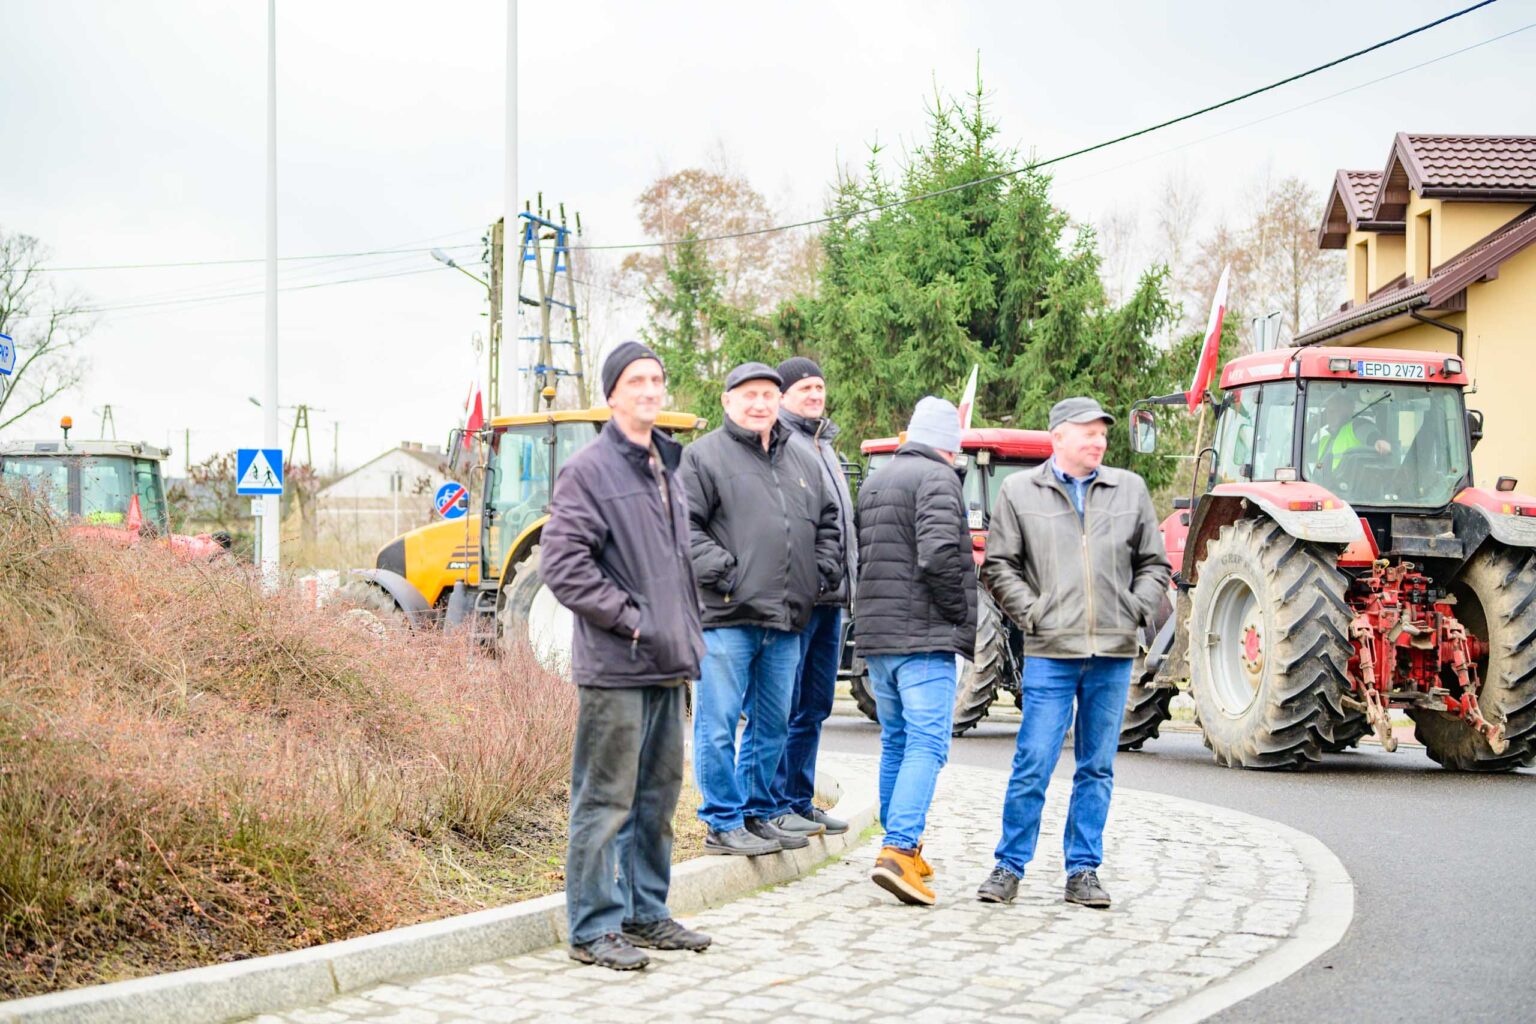 Protest rolniczy w Poddebicach i spotkanie z Wojewoda 60